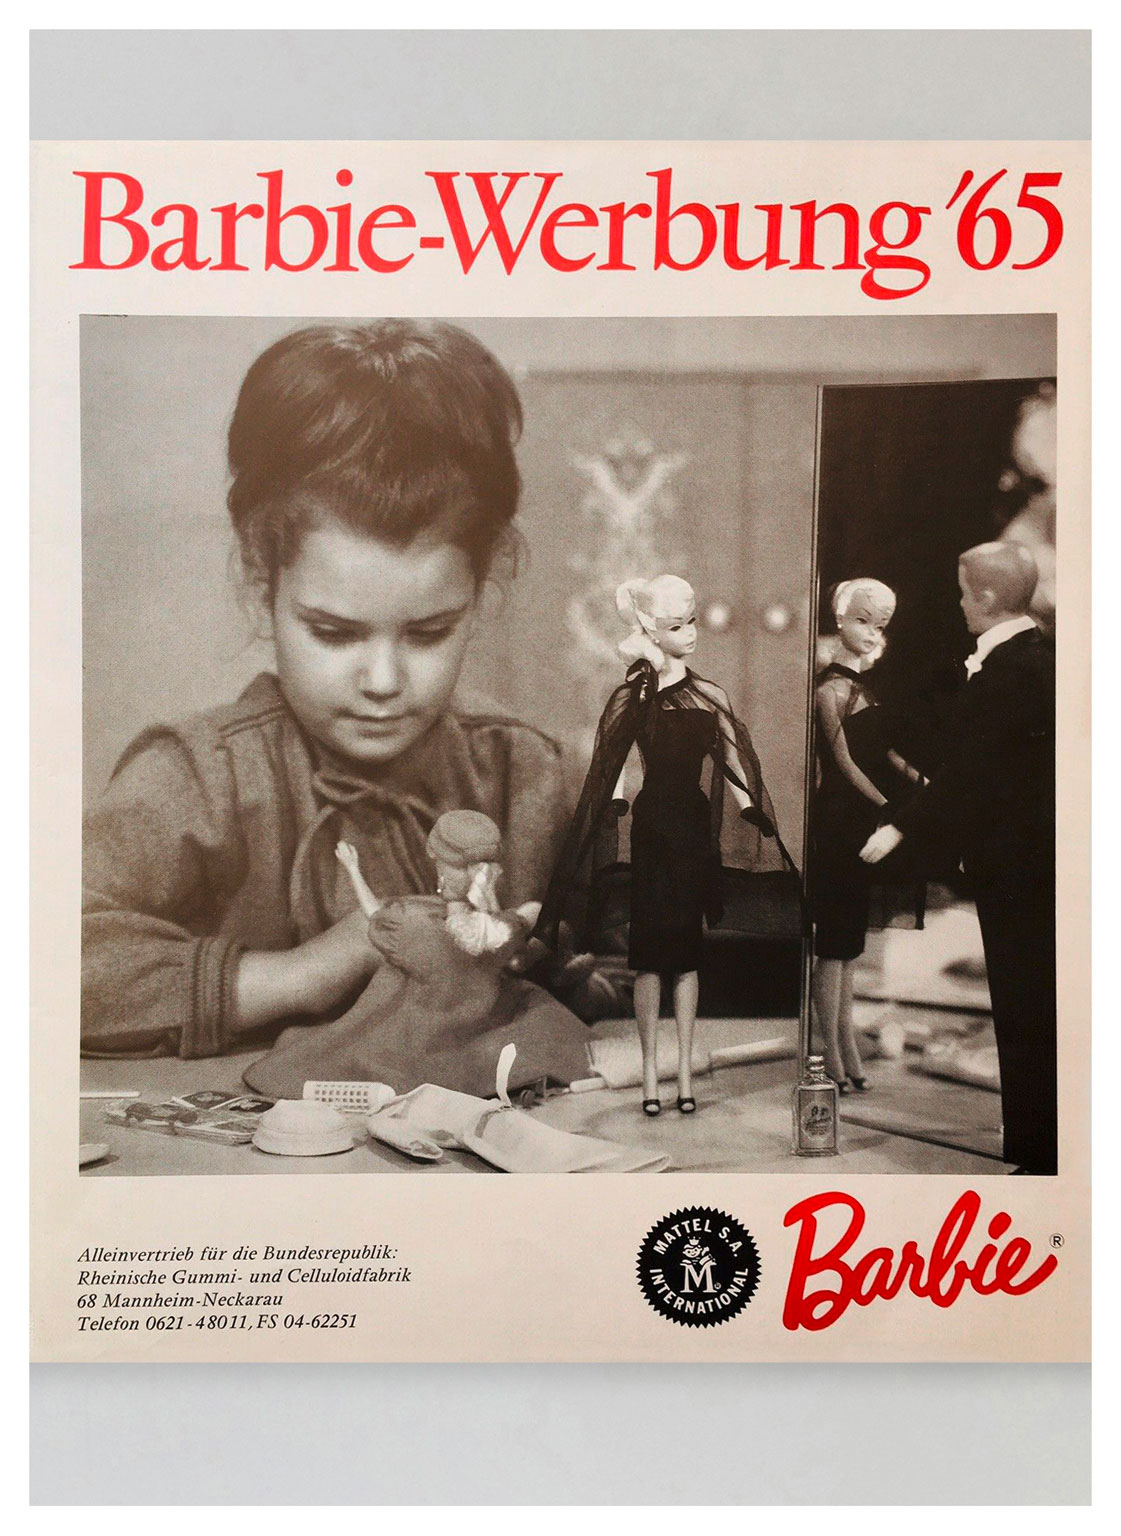 1965 German Barbie-Werbung '65 dealer brochure